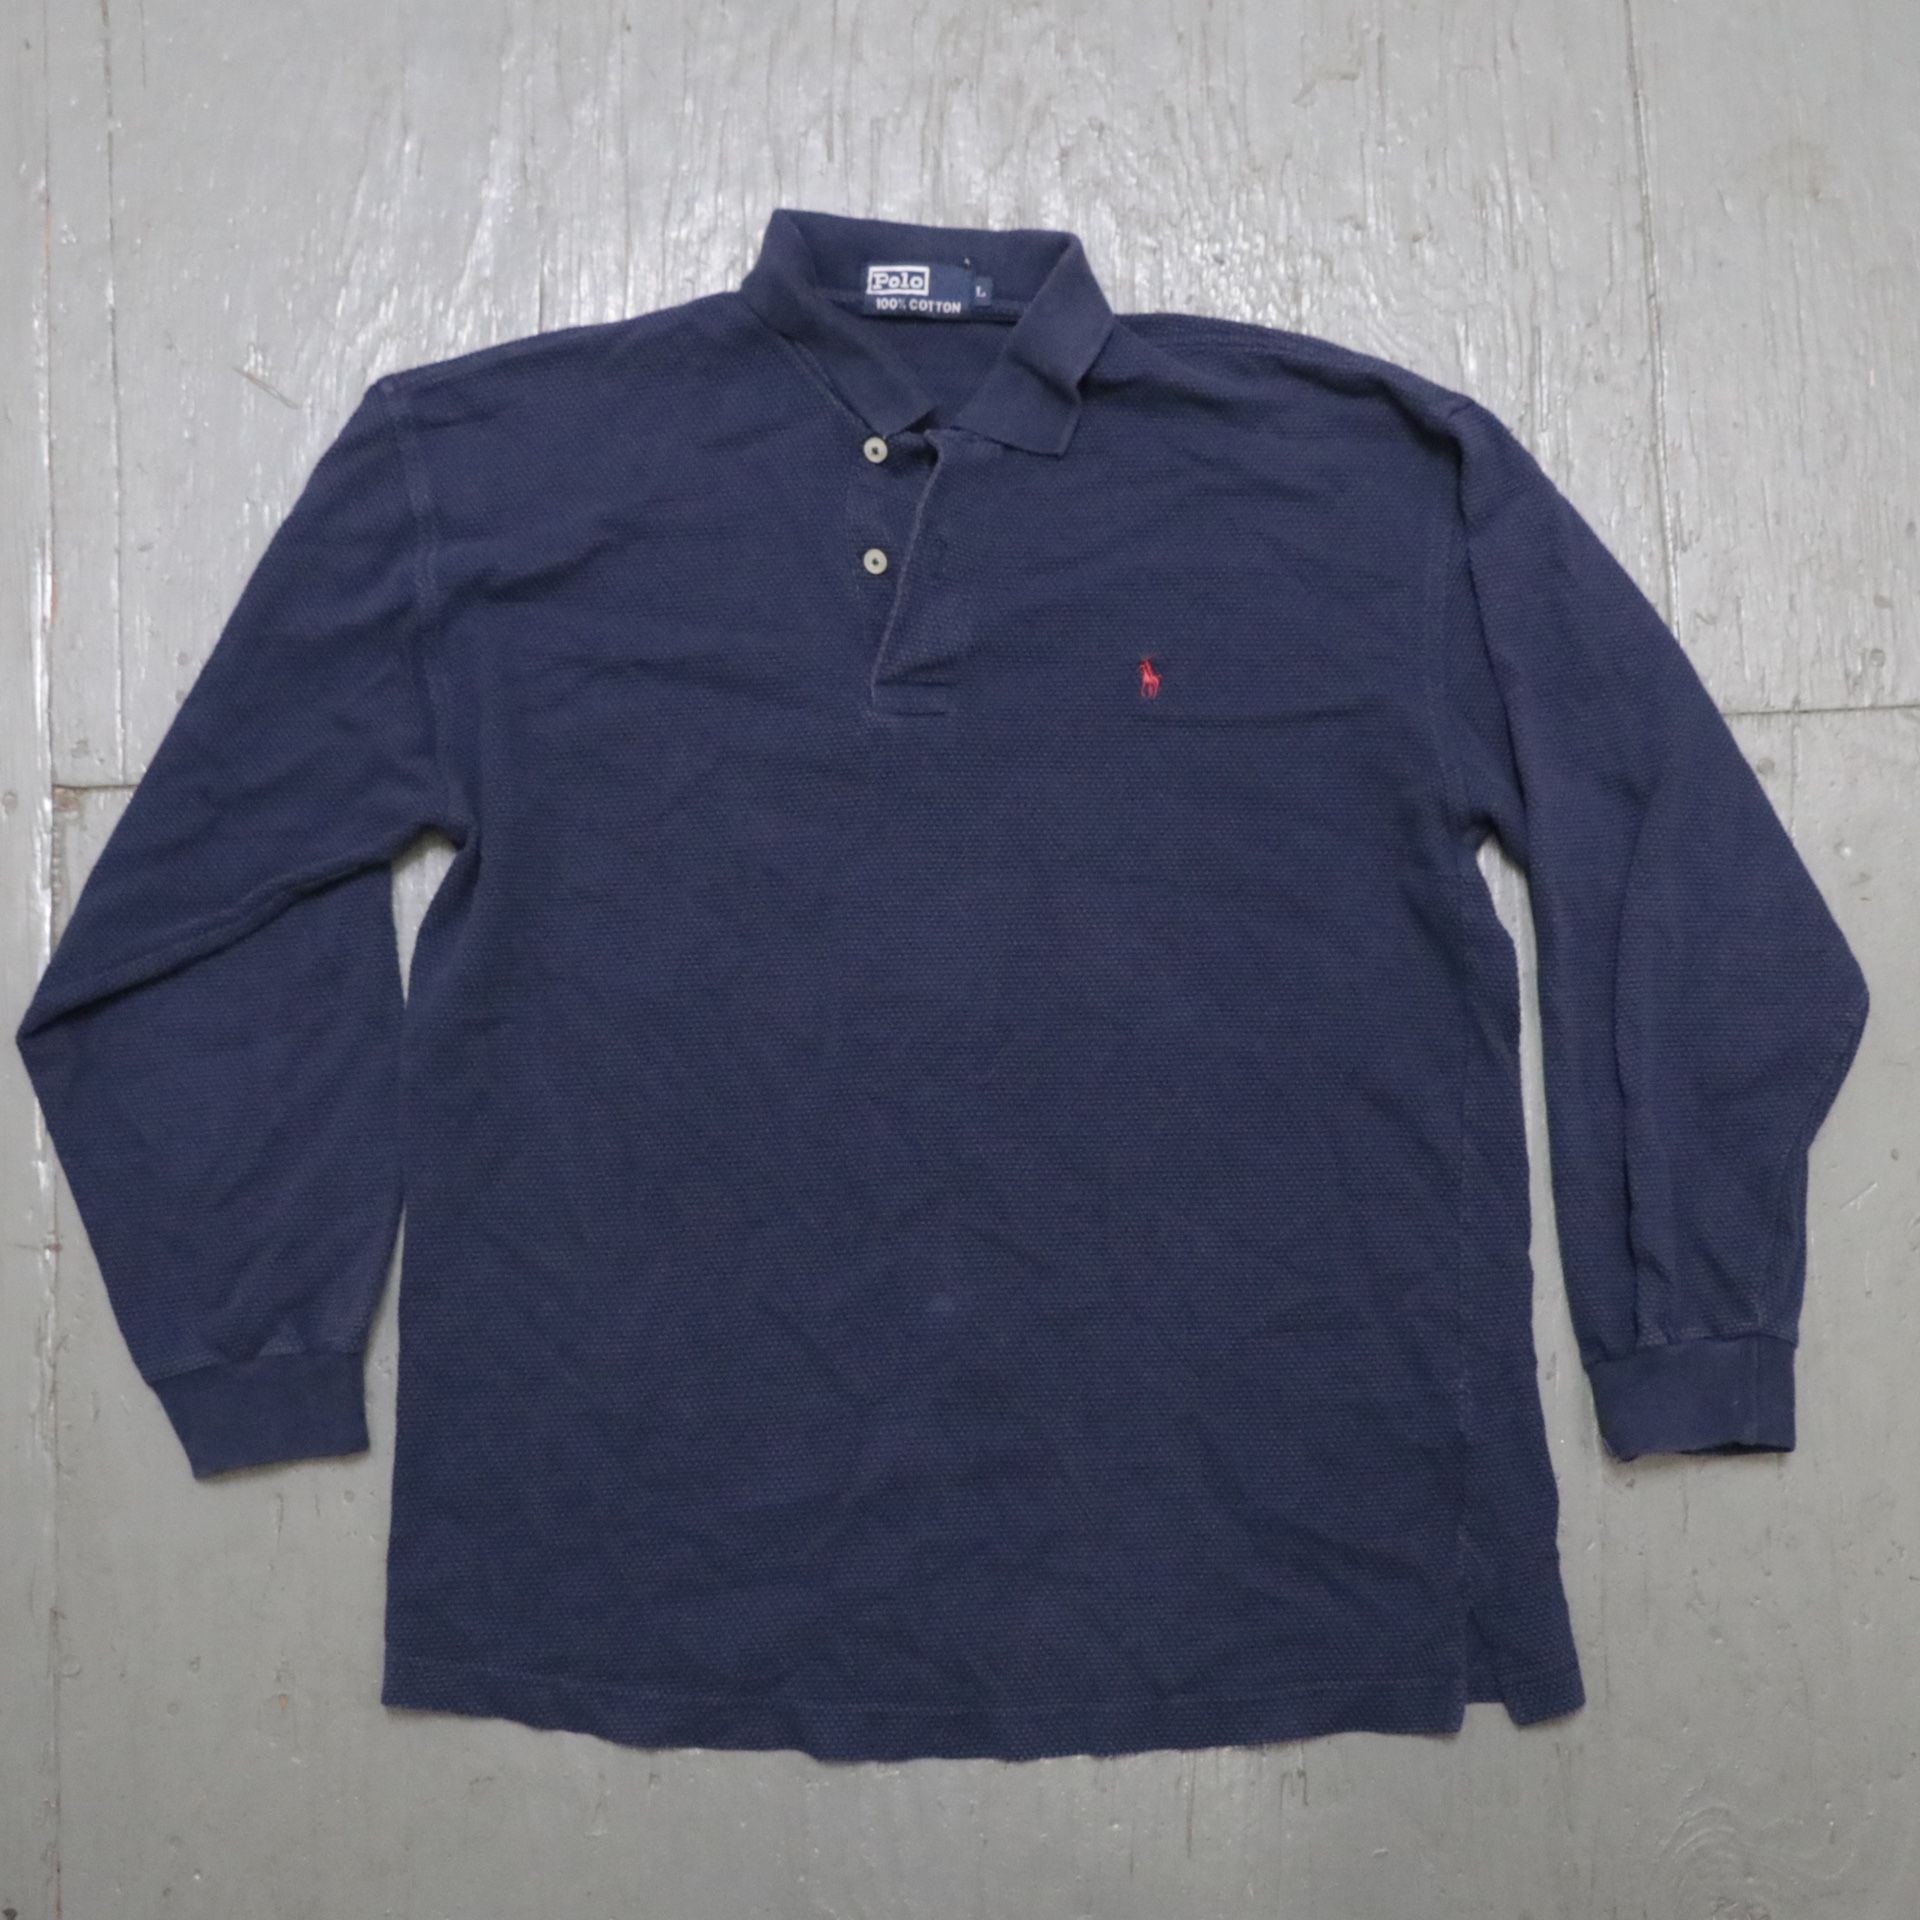 Polo by Ralph Lauren long sleeve shirt